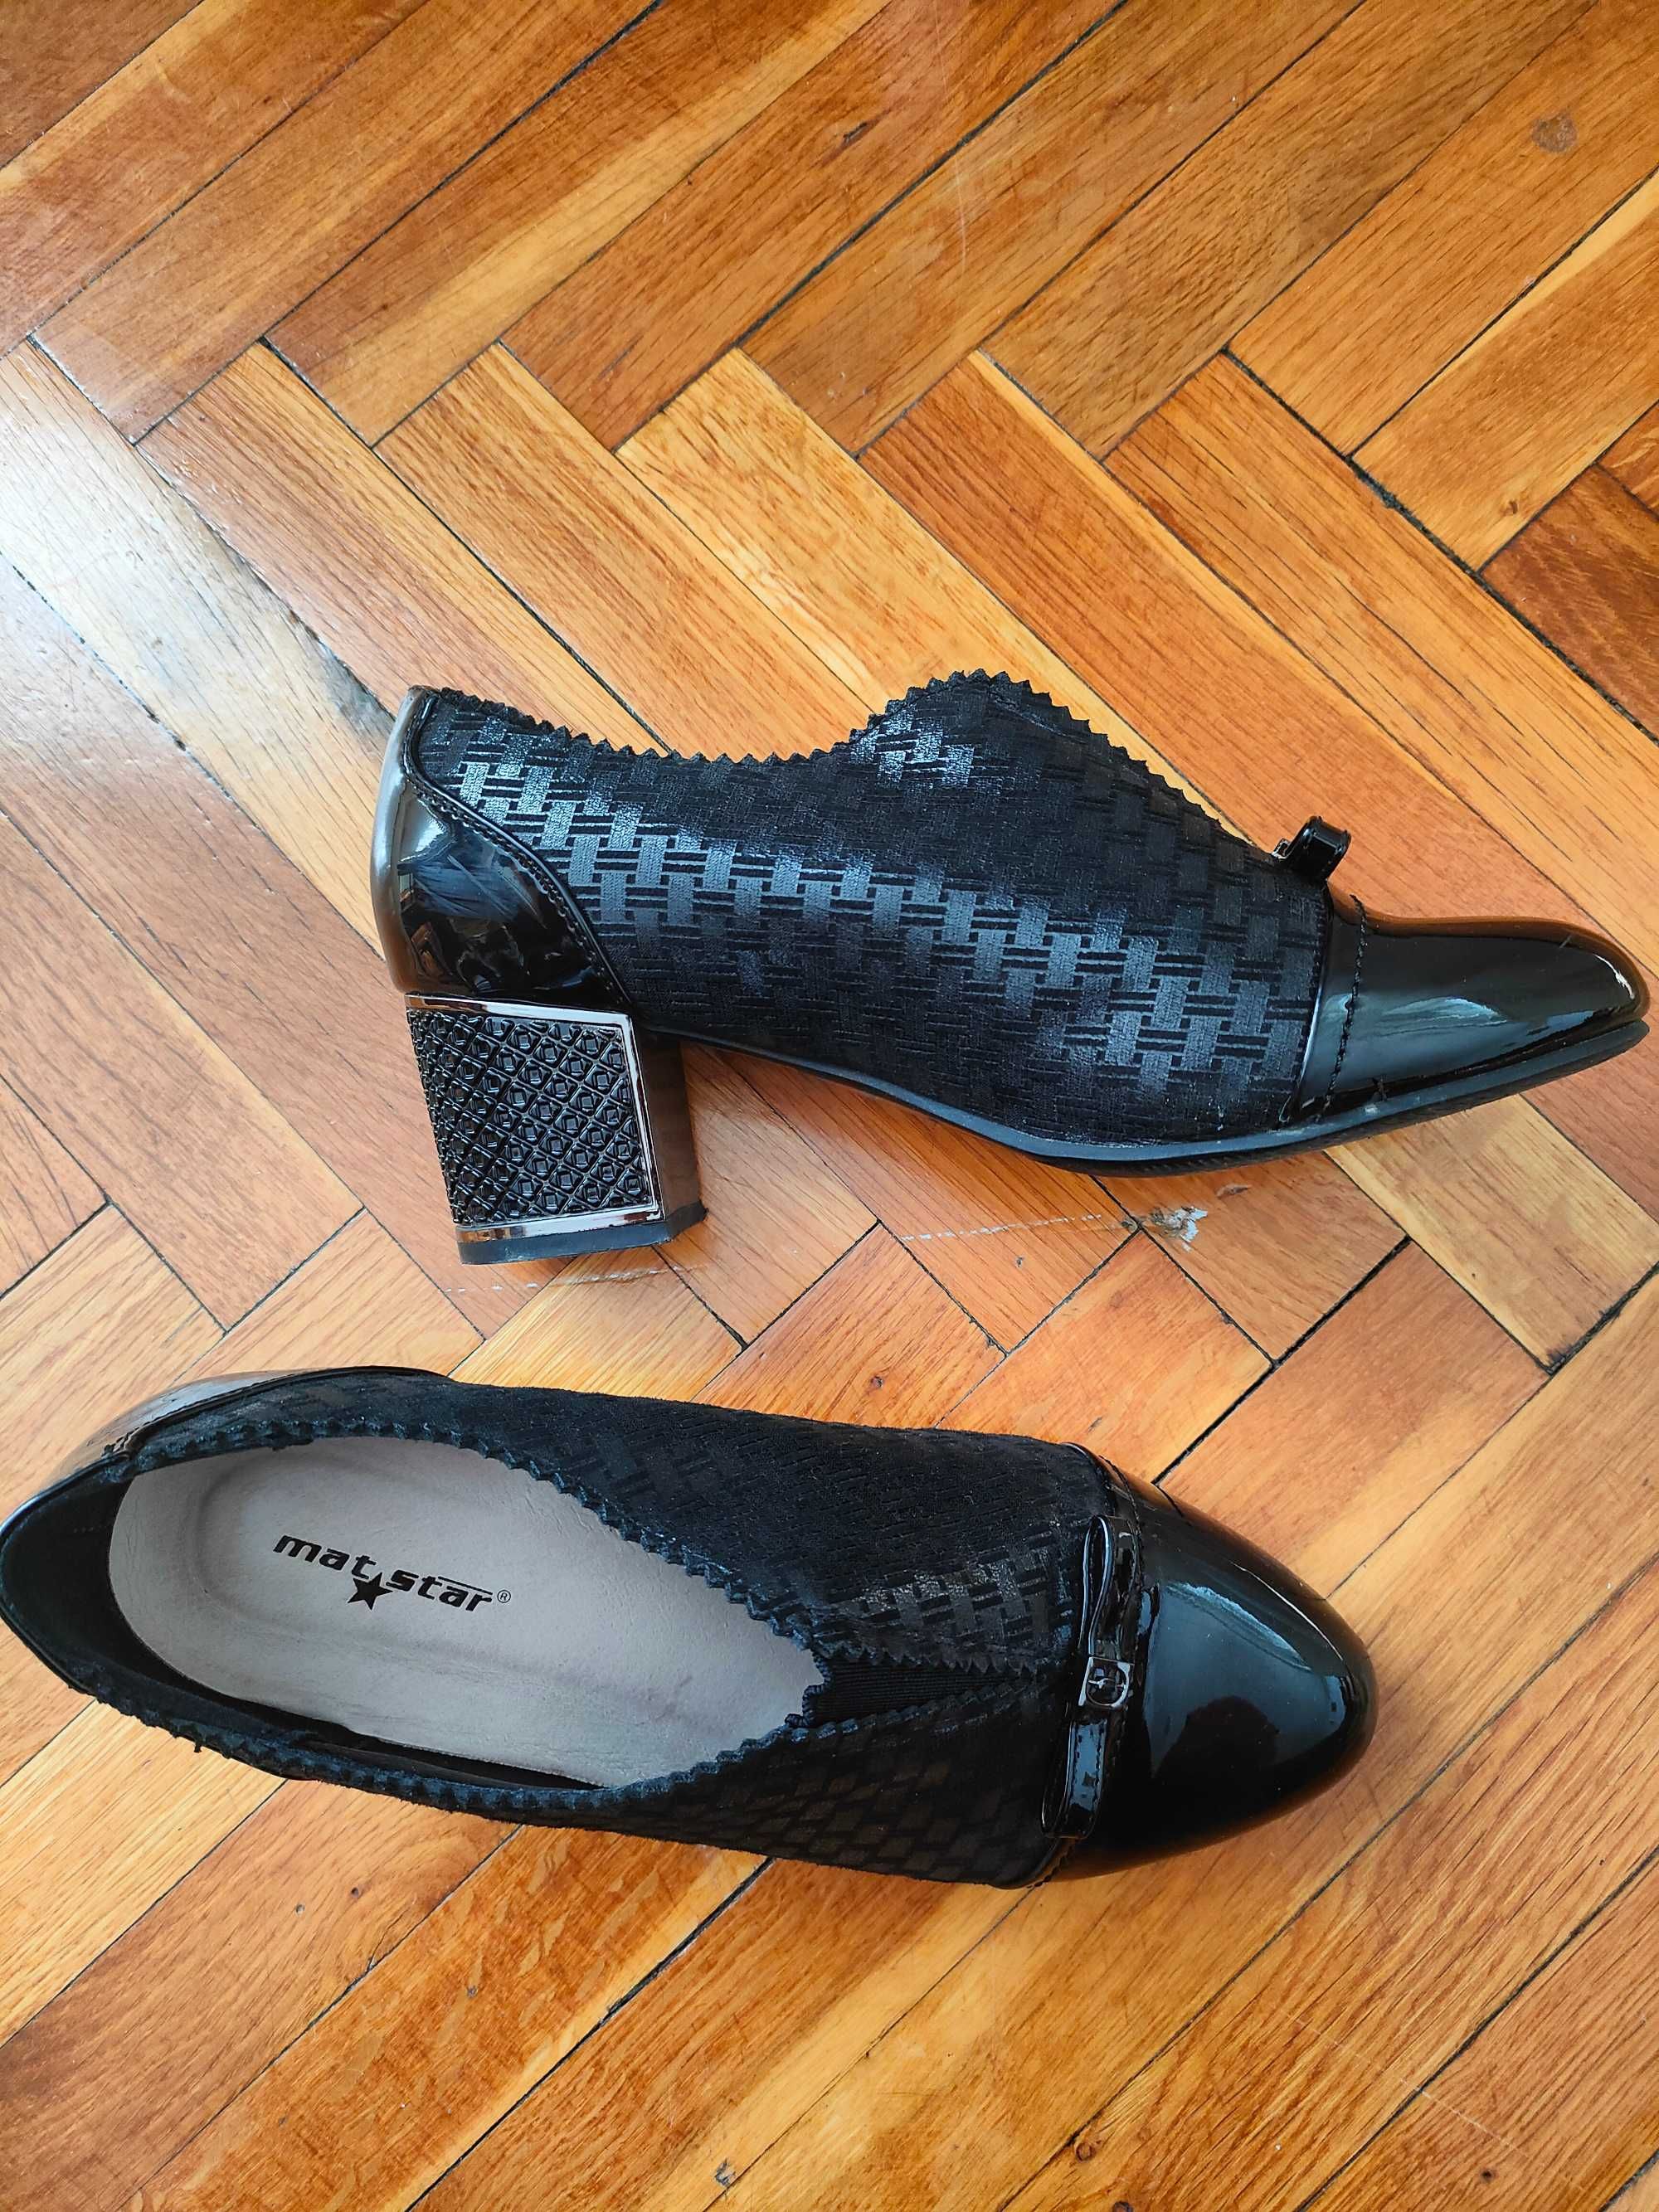 Дамски обувки Mat Star черни, лачени, в отлично състояние